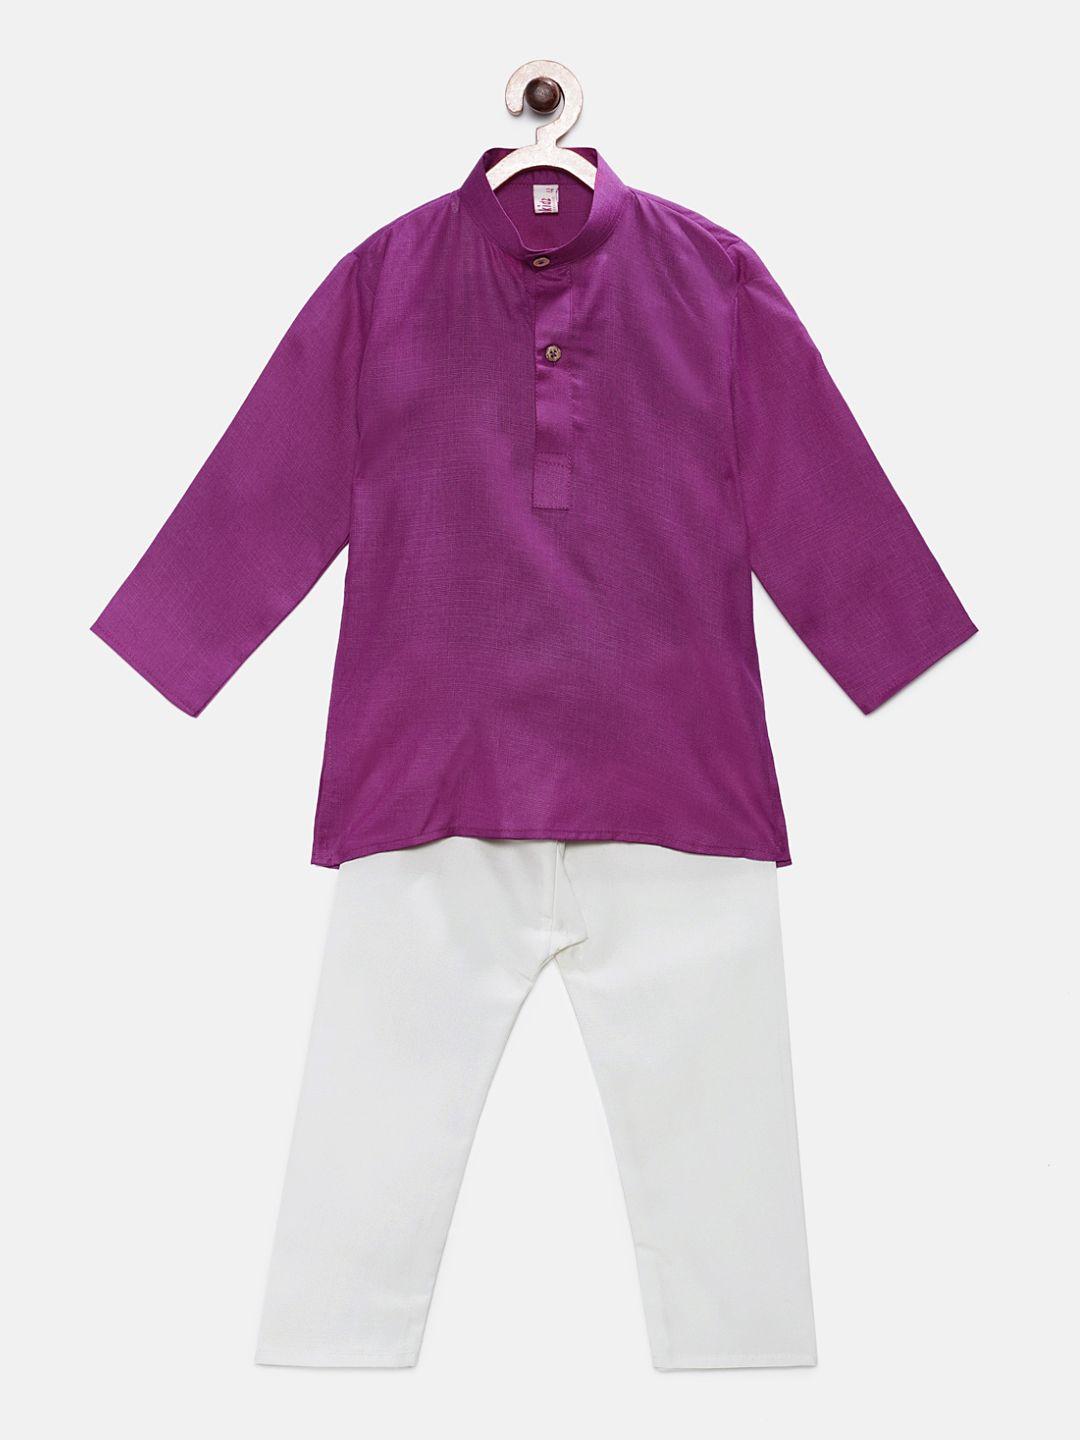 ridokidz boys purple & white solid kurta with pyjamas